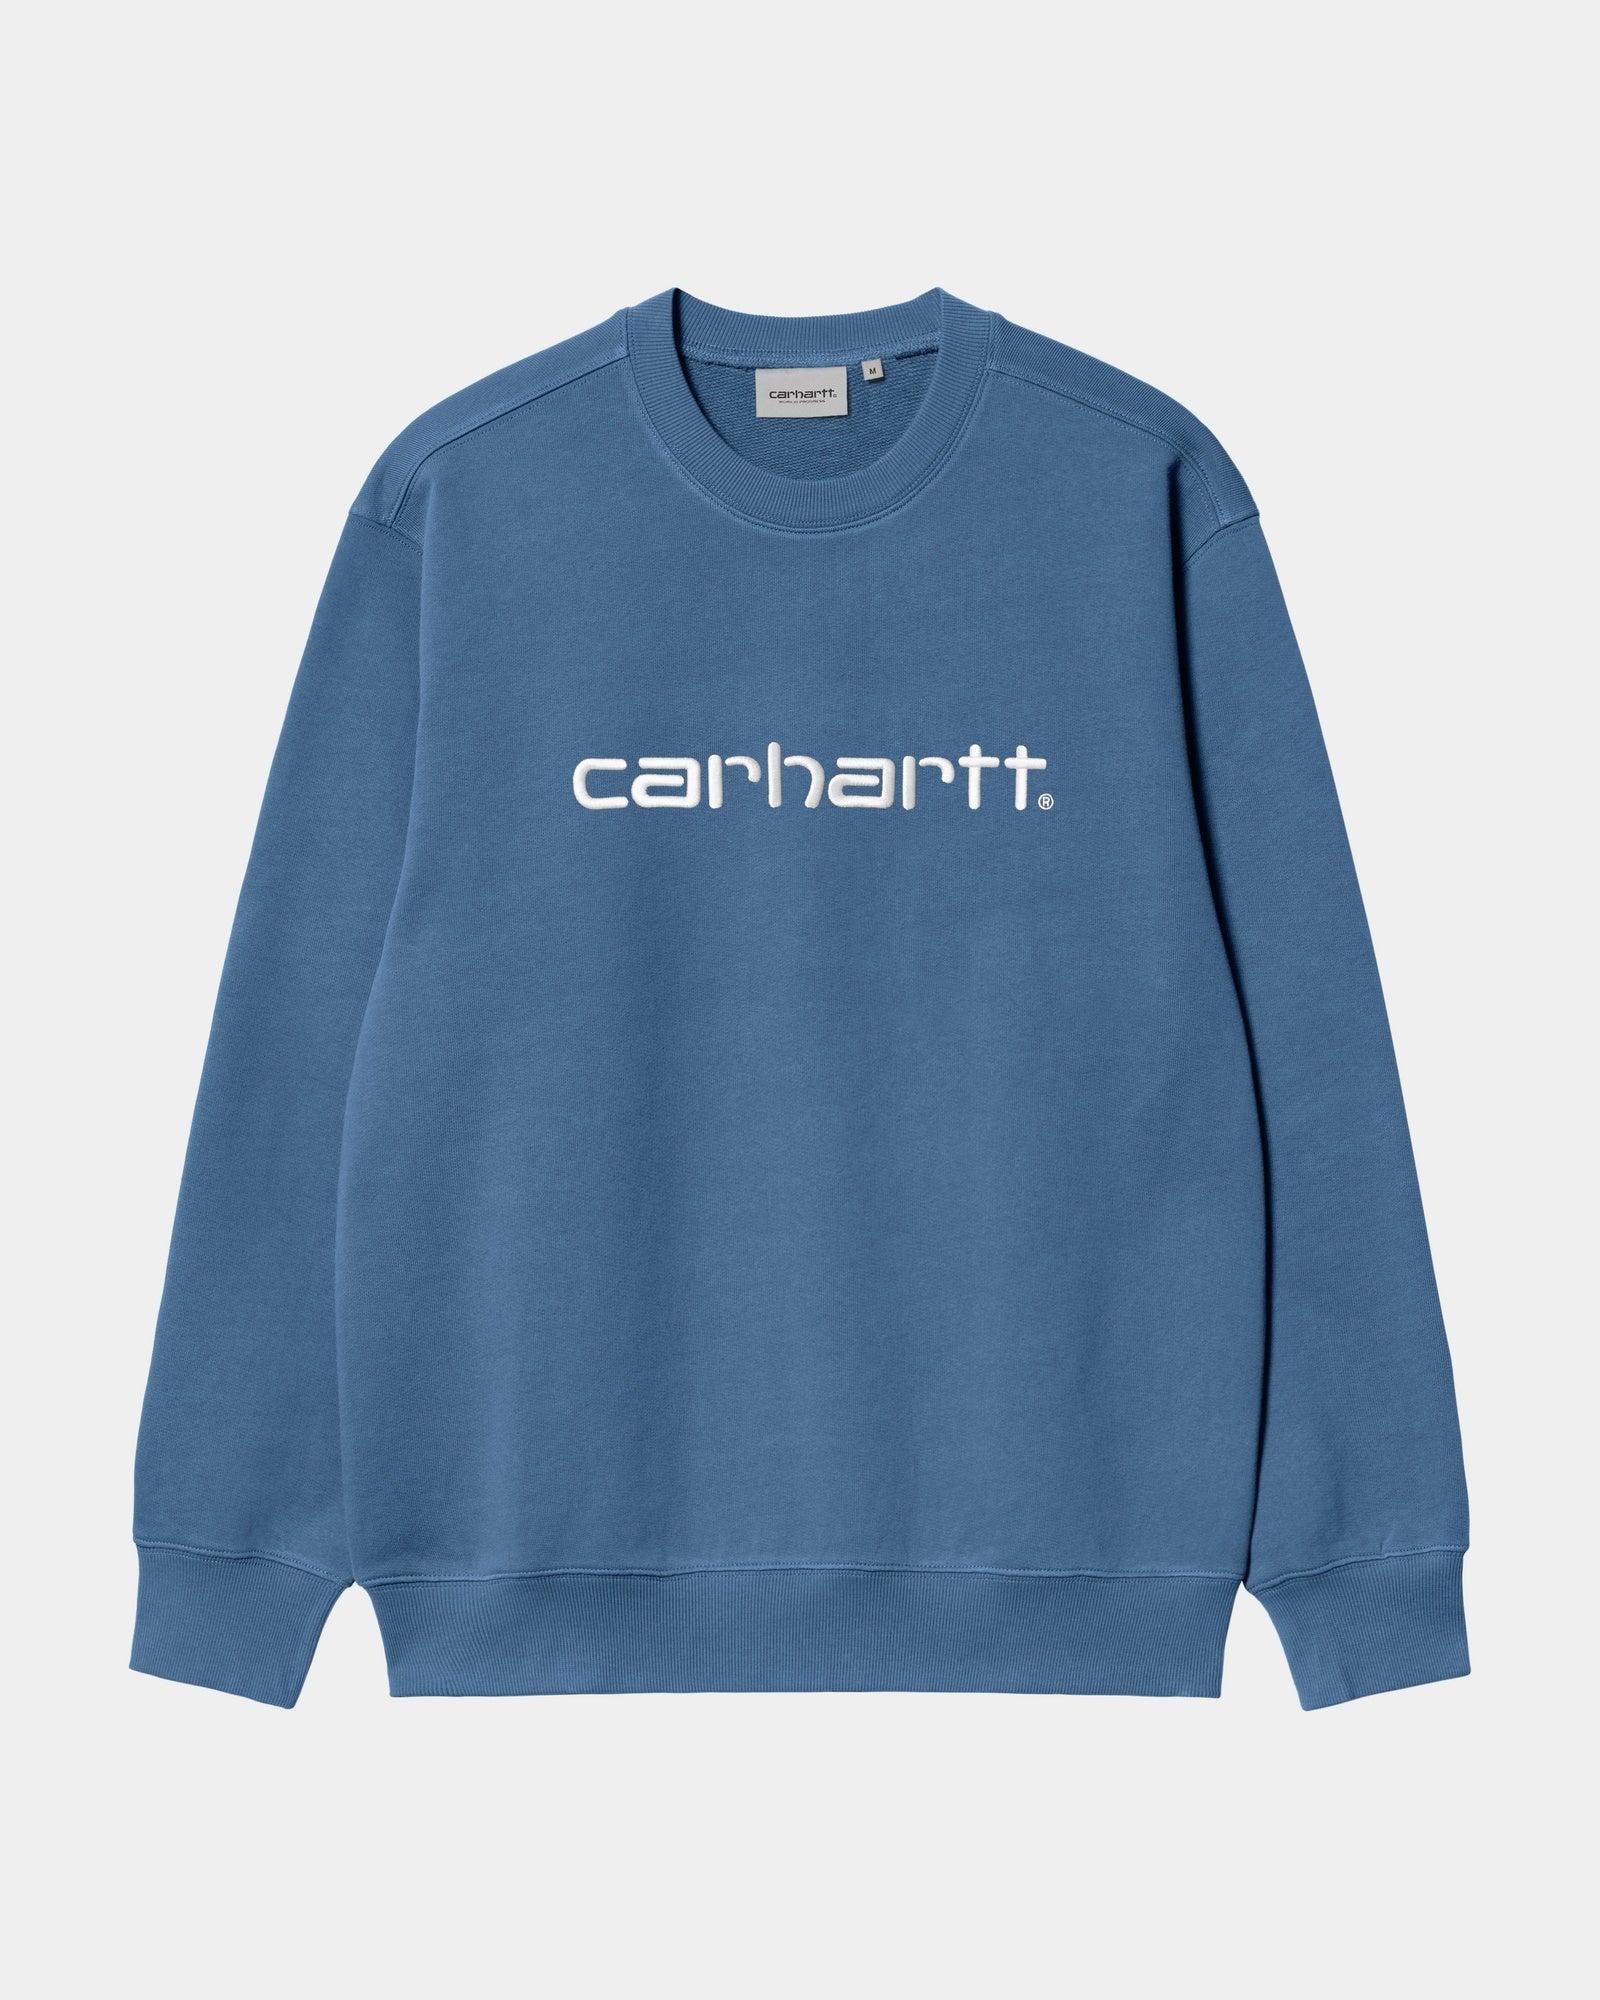 칼하트WIP Carhartt Sweatshirt,Sorrent / White